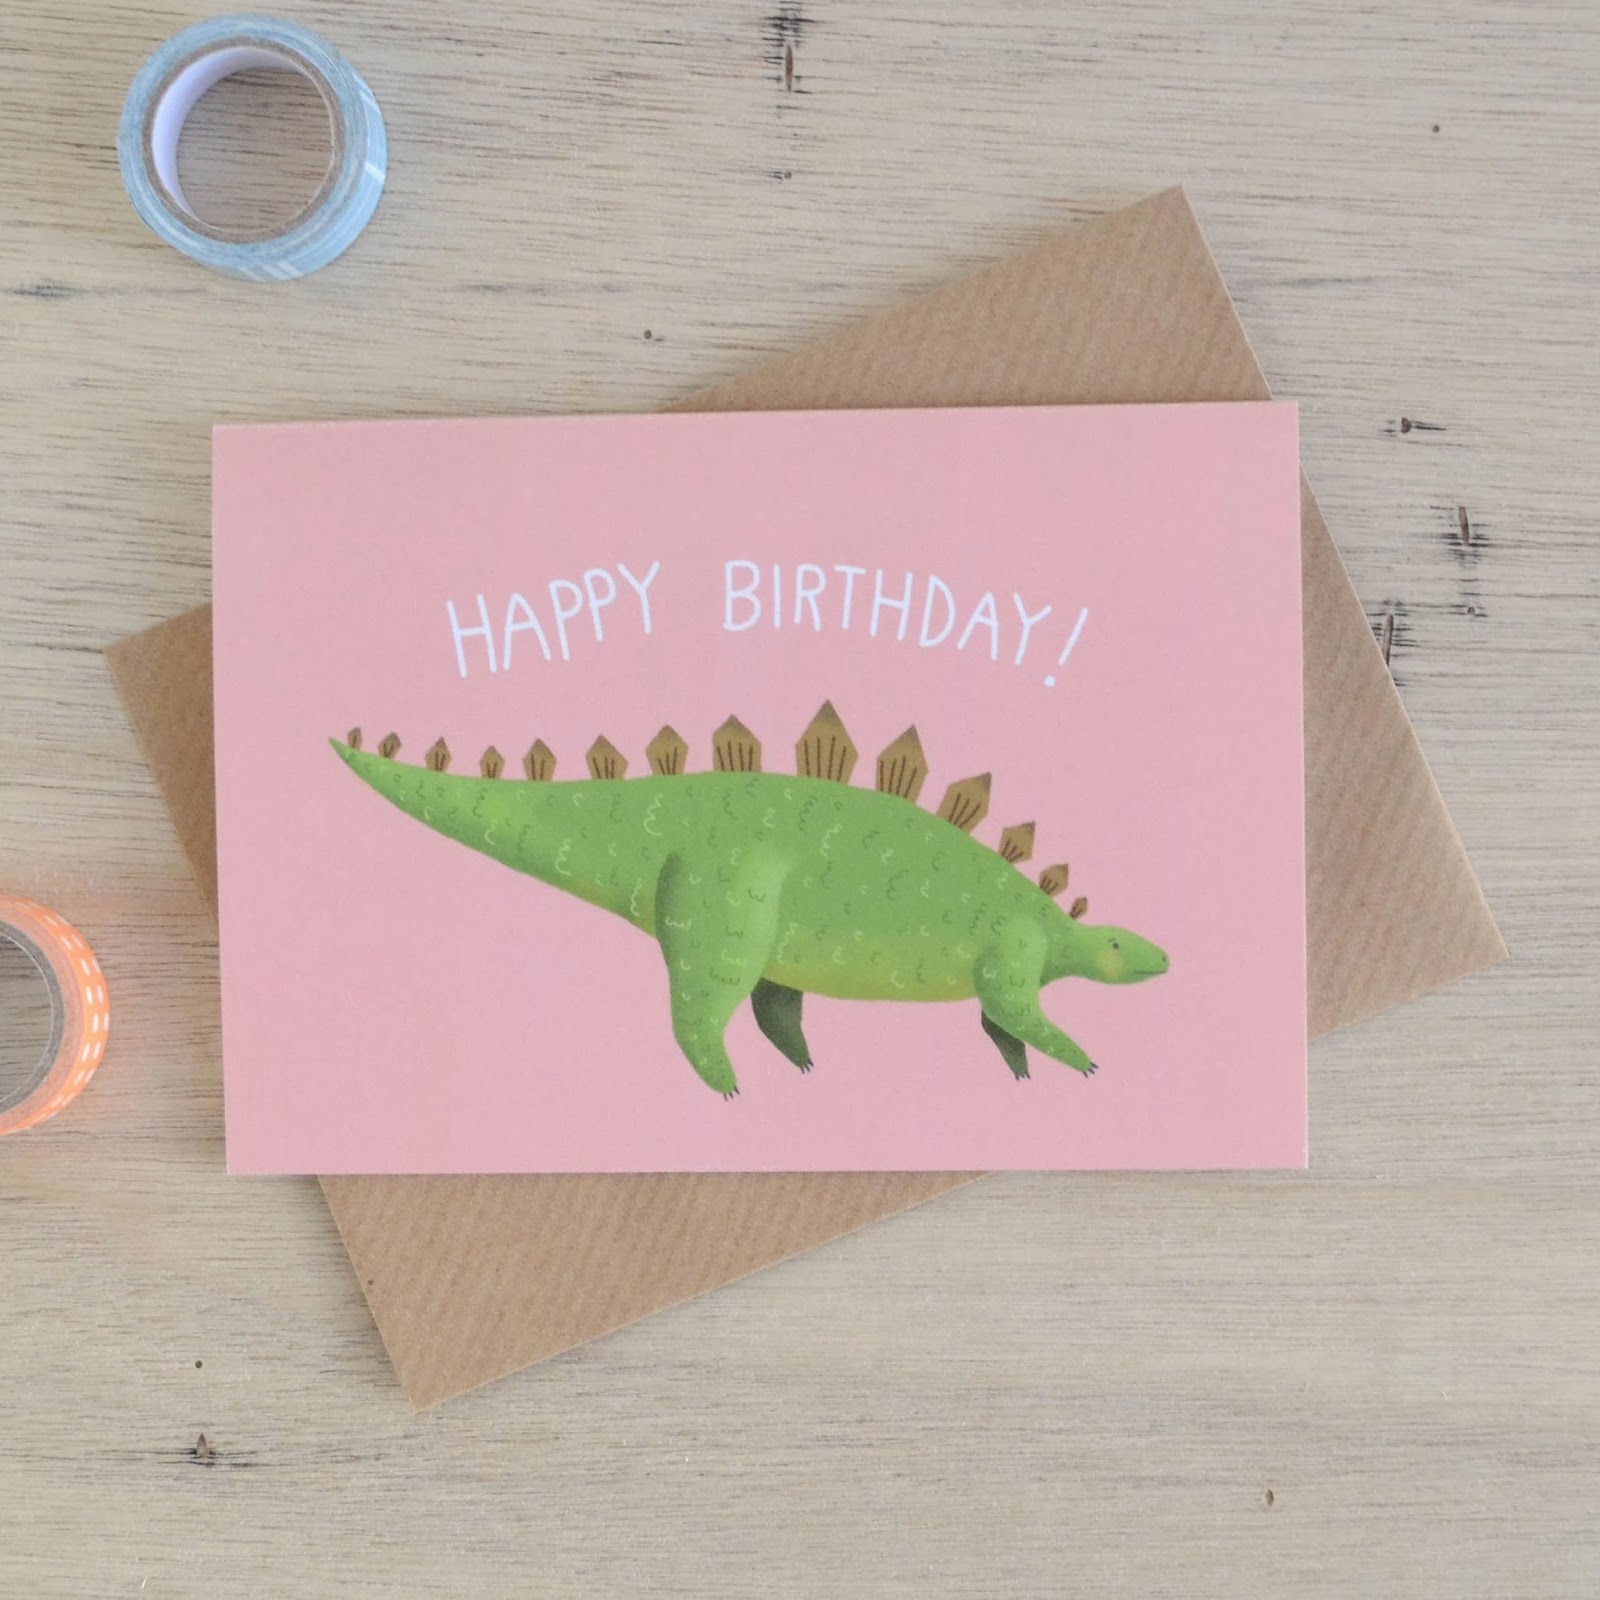 http://folksy.com/items/5725571-Stegosaurus-Birthday-Card